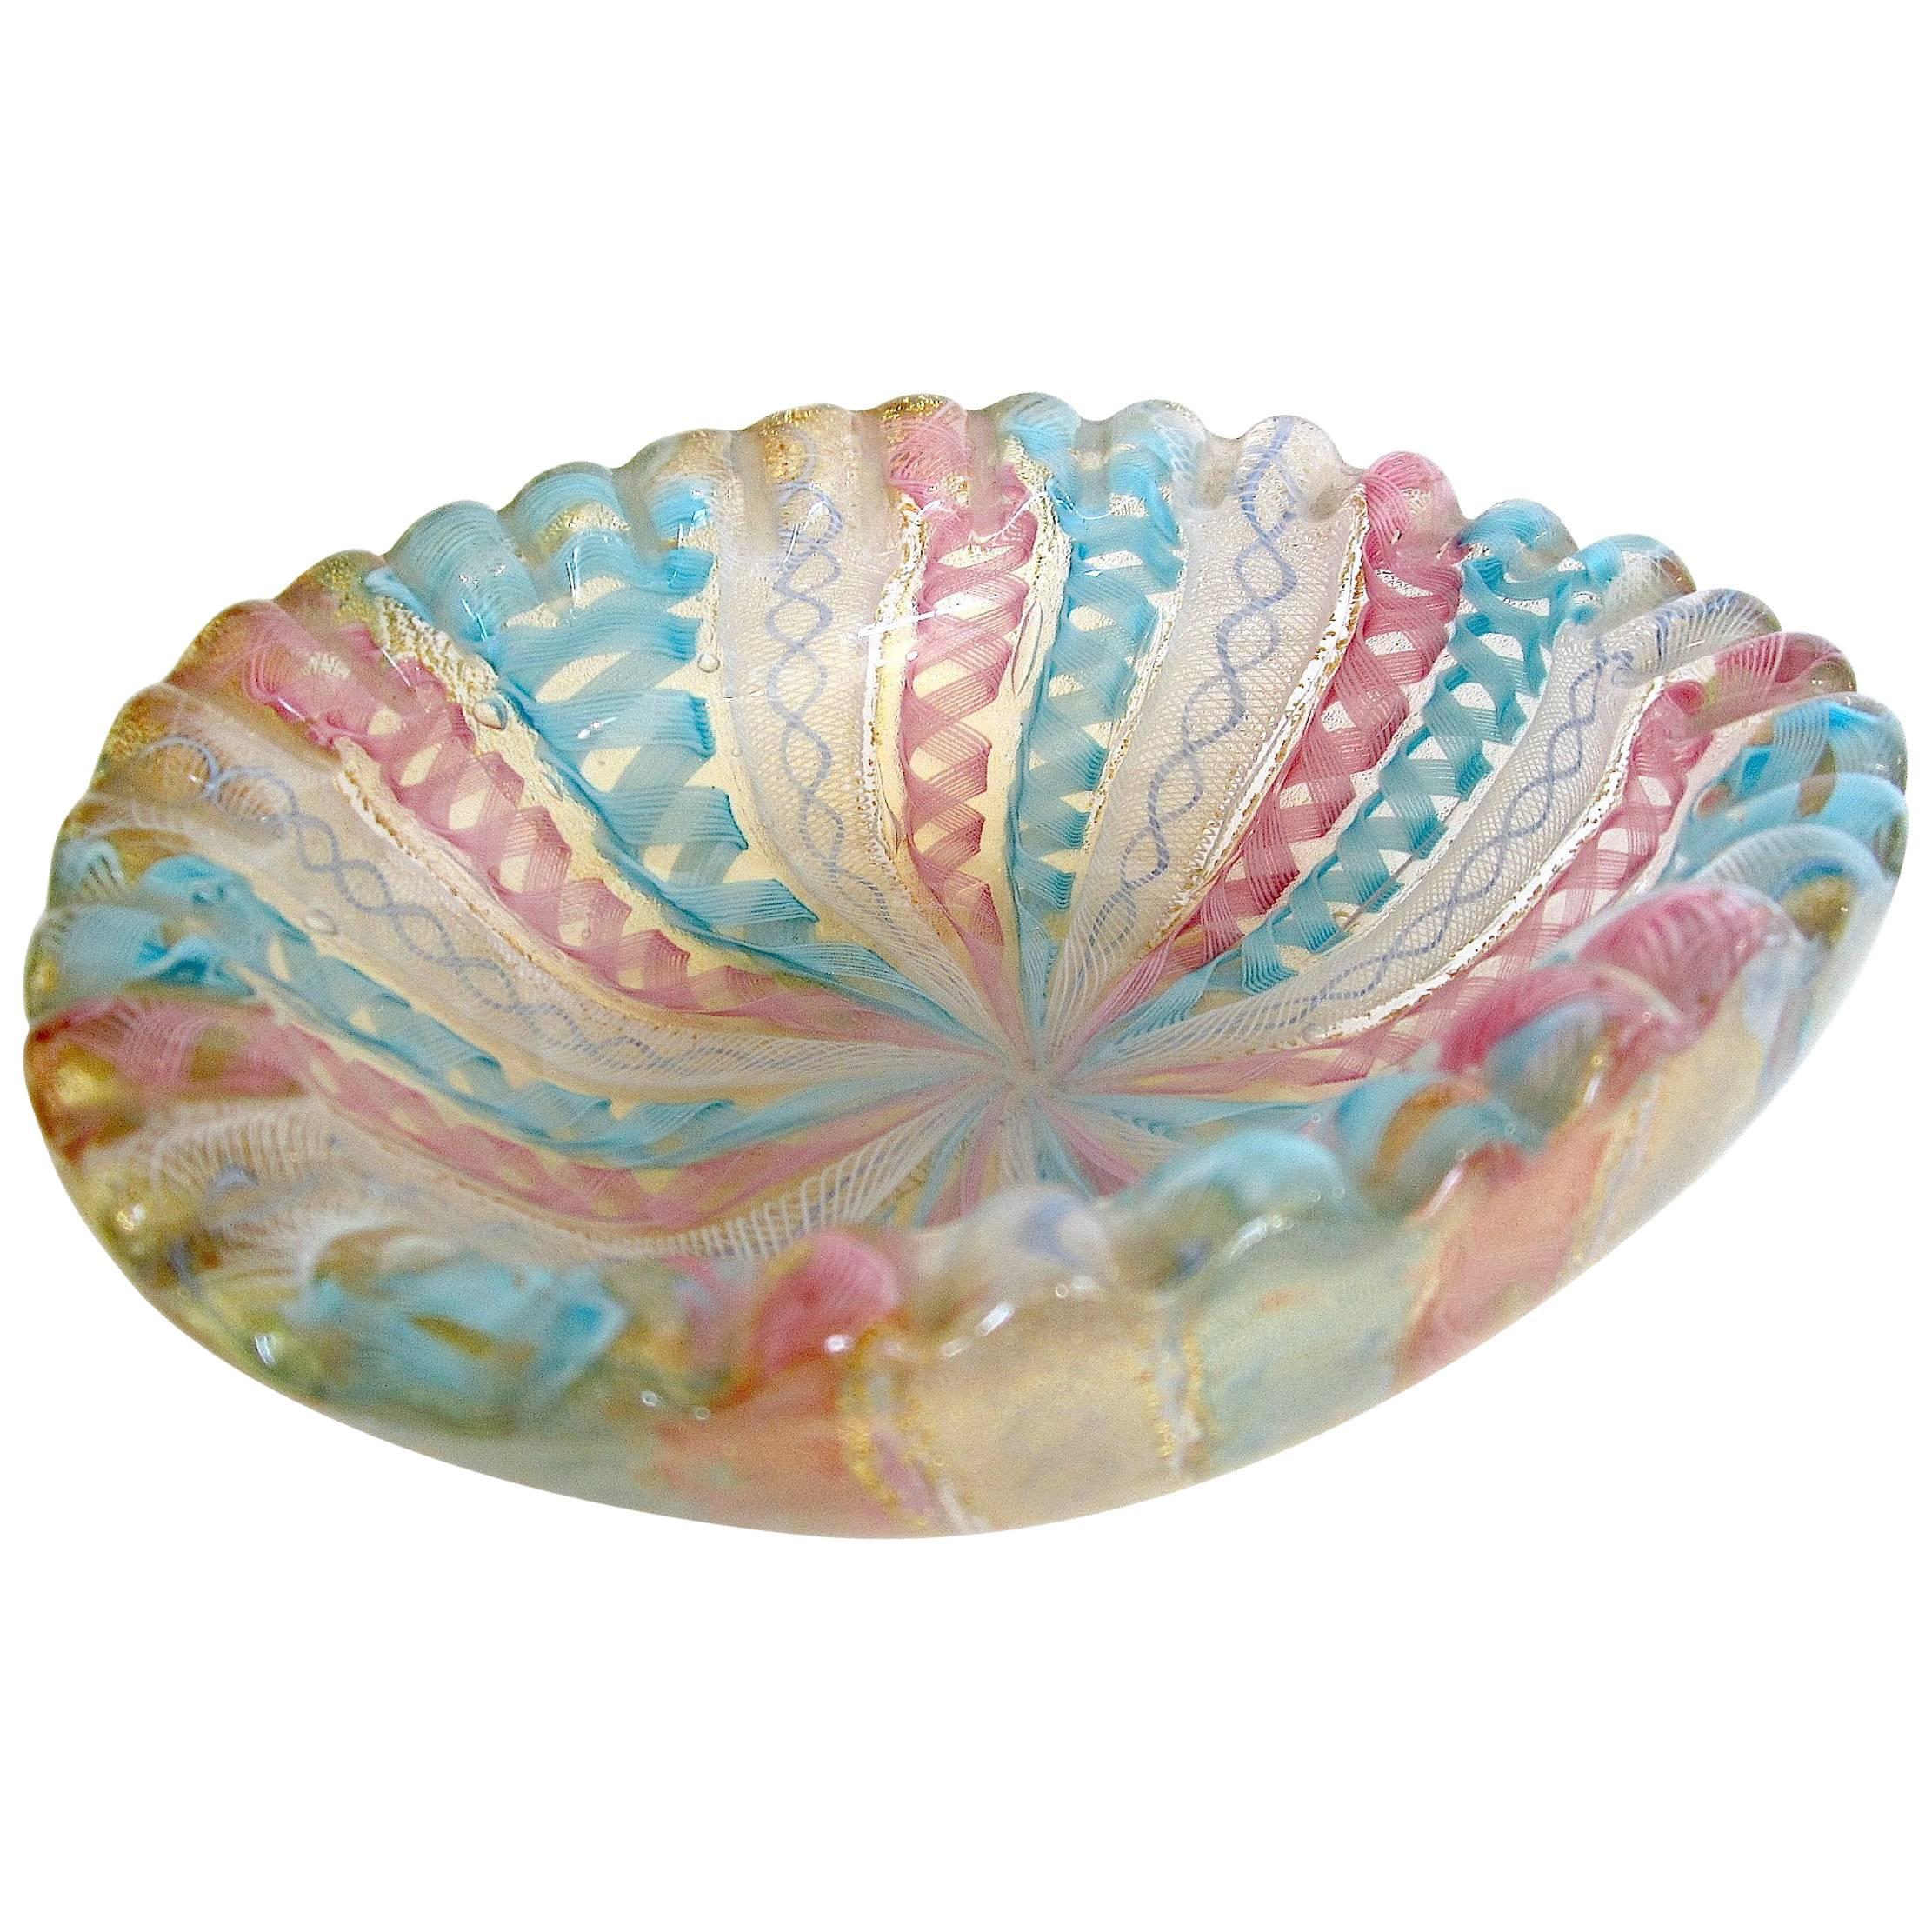 Handblown Murano Glass Diminutive Latticino Scalloped Bowl 